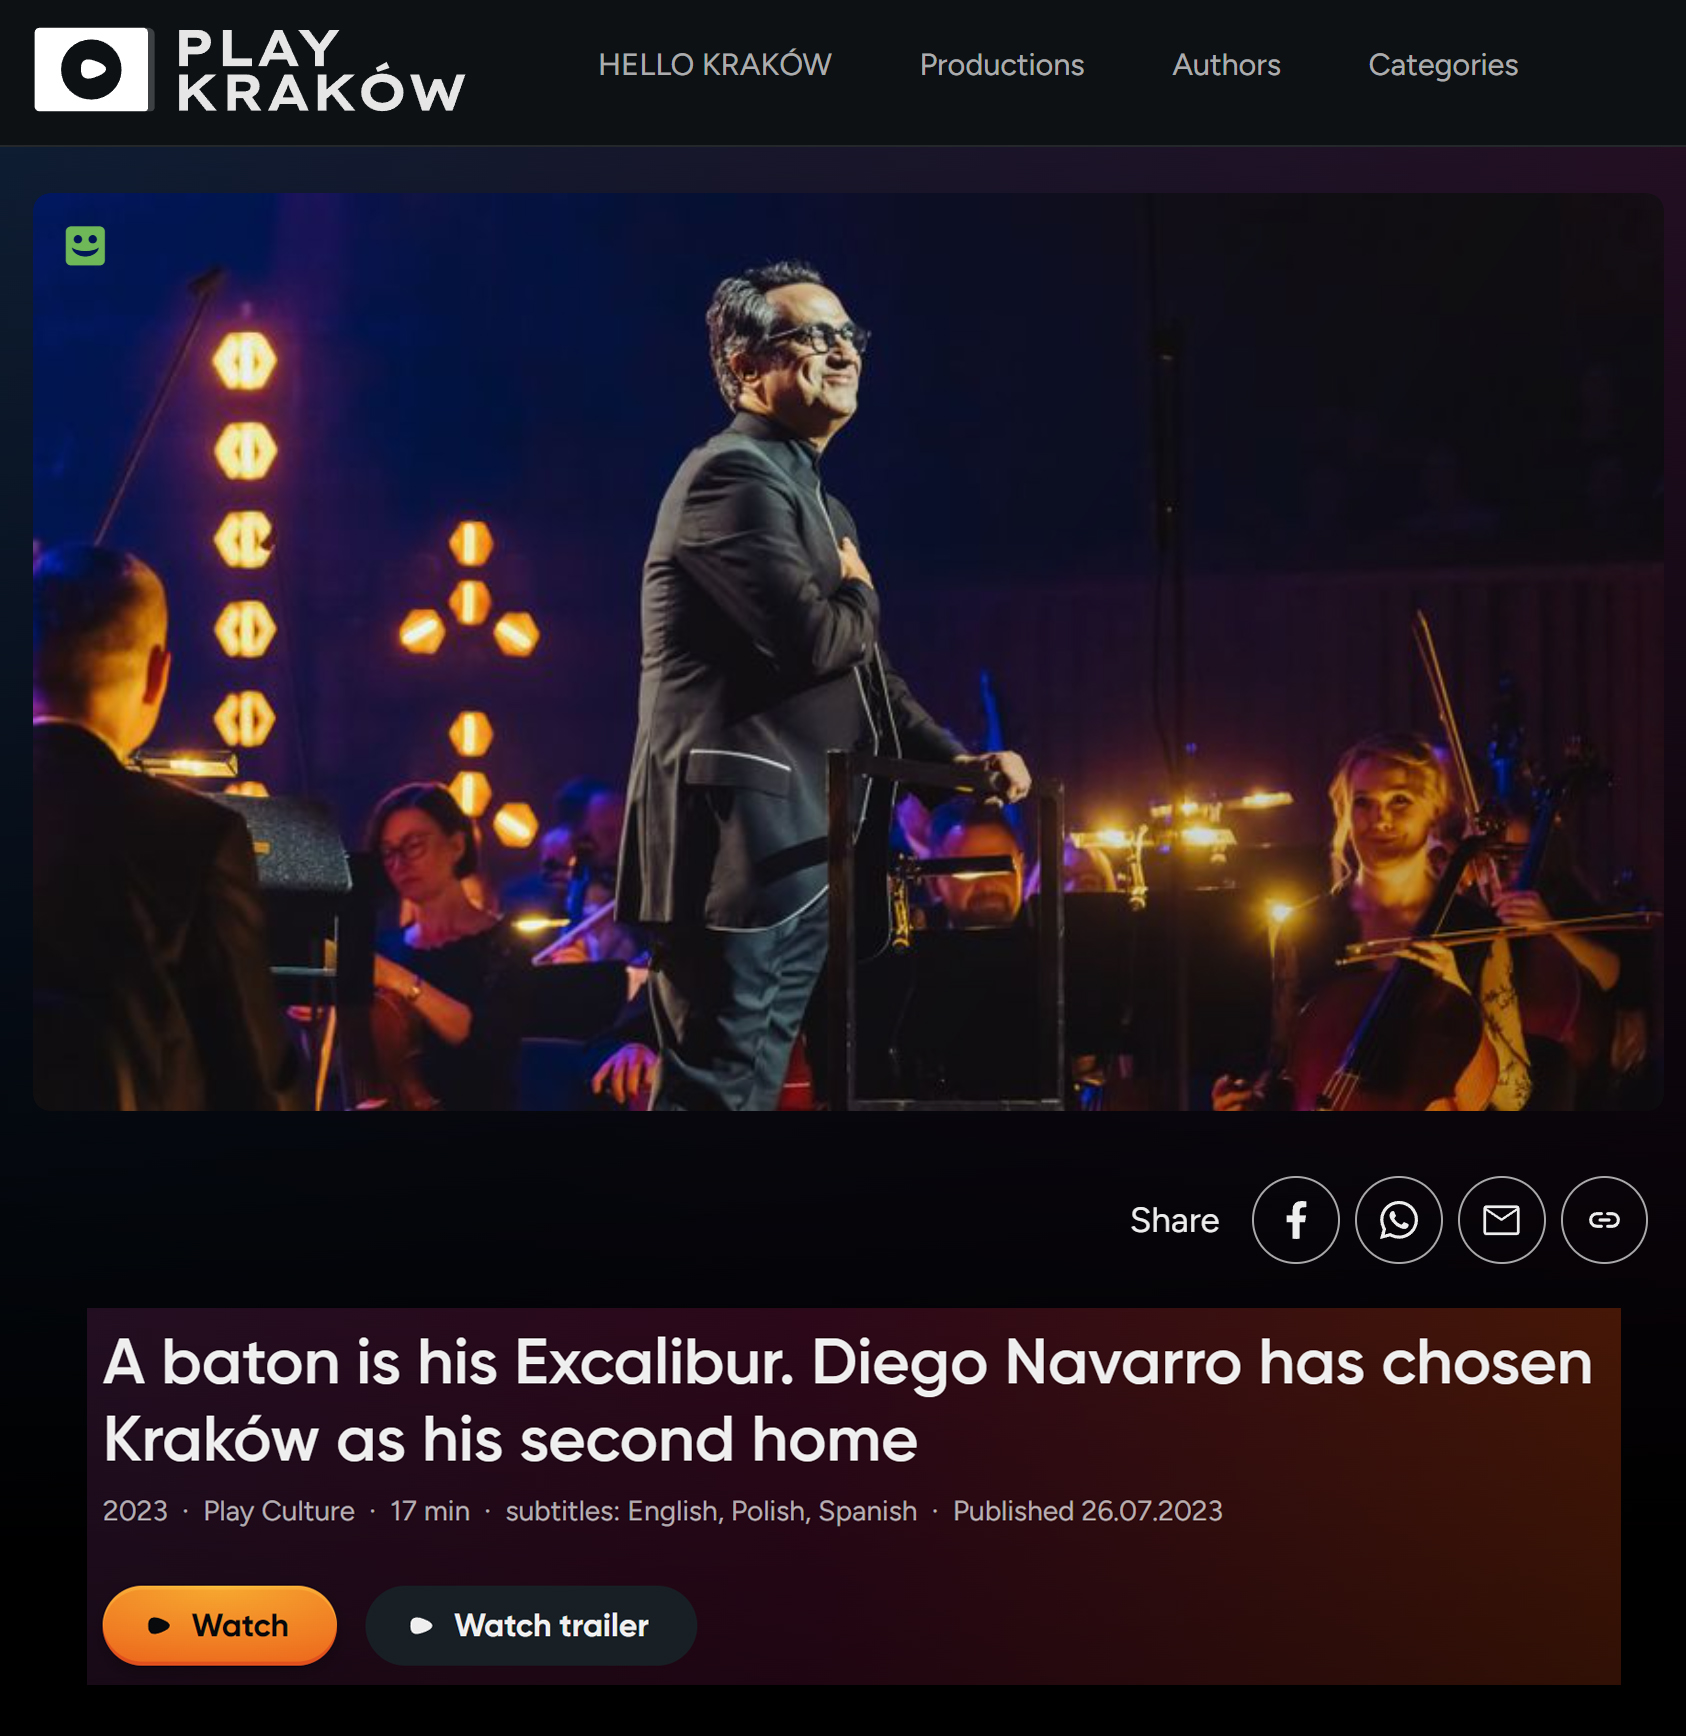 Documental Play Krakow “Diego Navarro Space Gala”